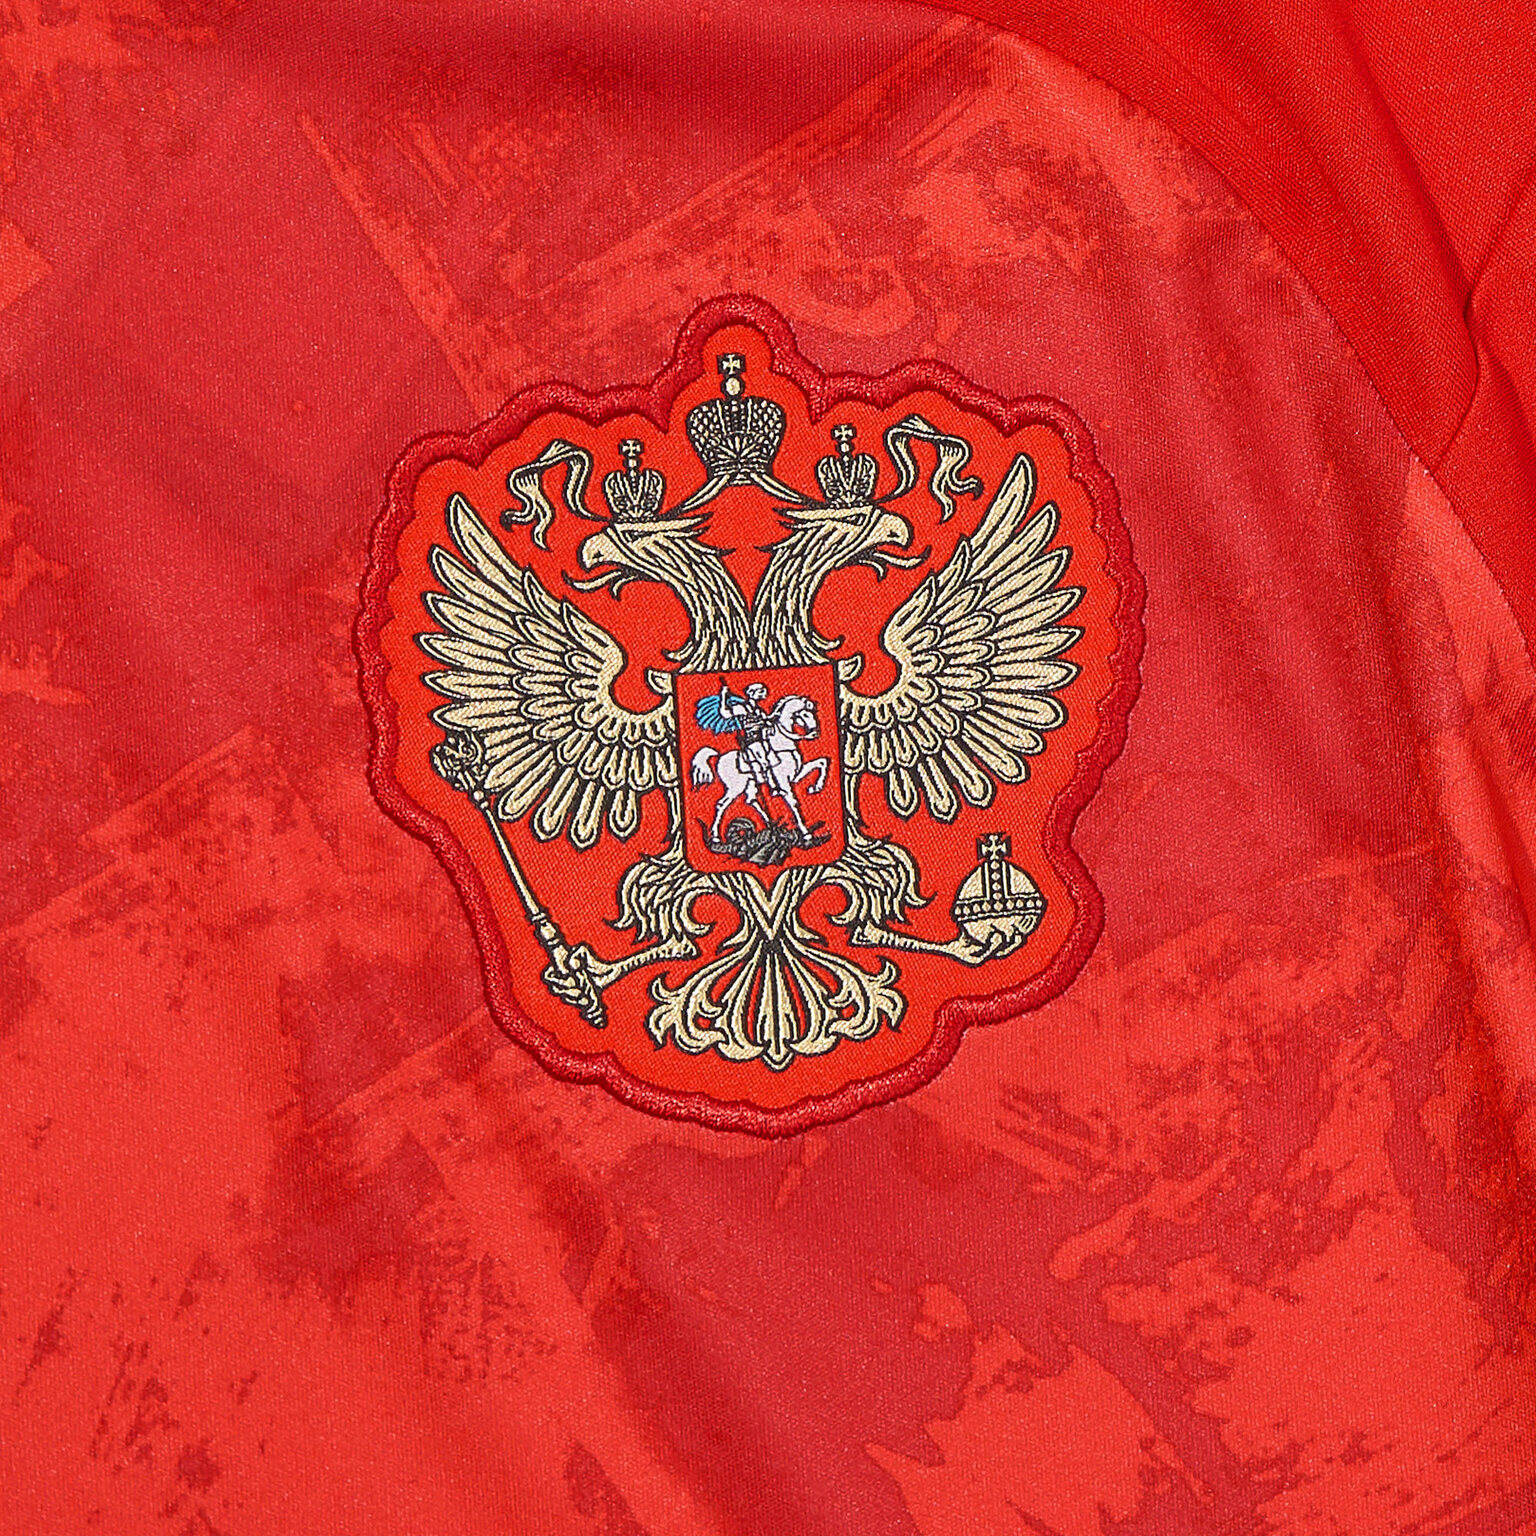 Футболка домашняя подростковая Adidas сборной России сезон 2020/21